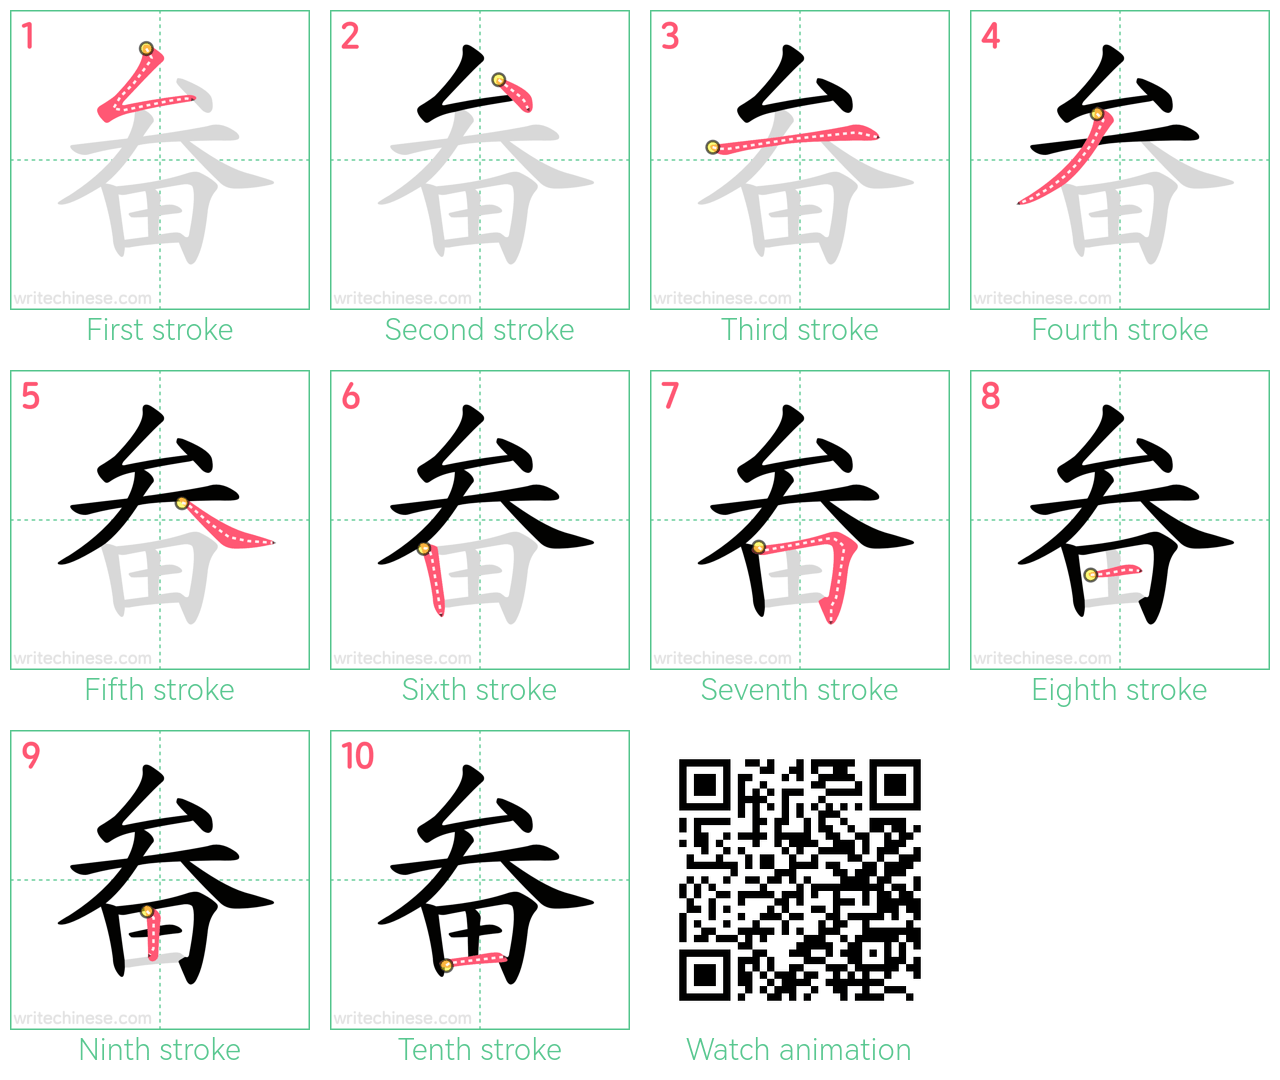 畚 step-by-step stroke order diagrams